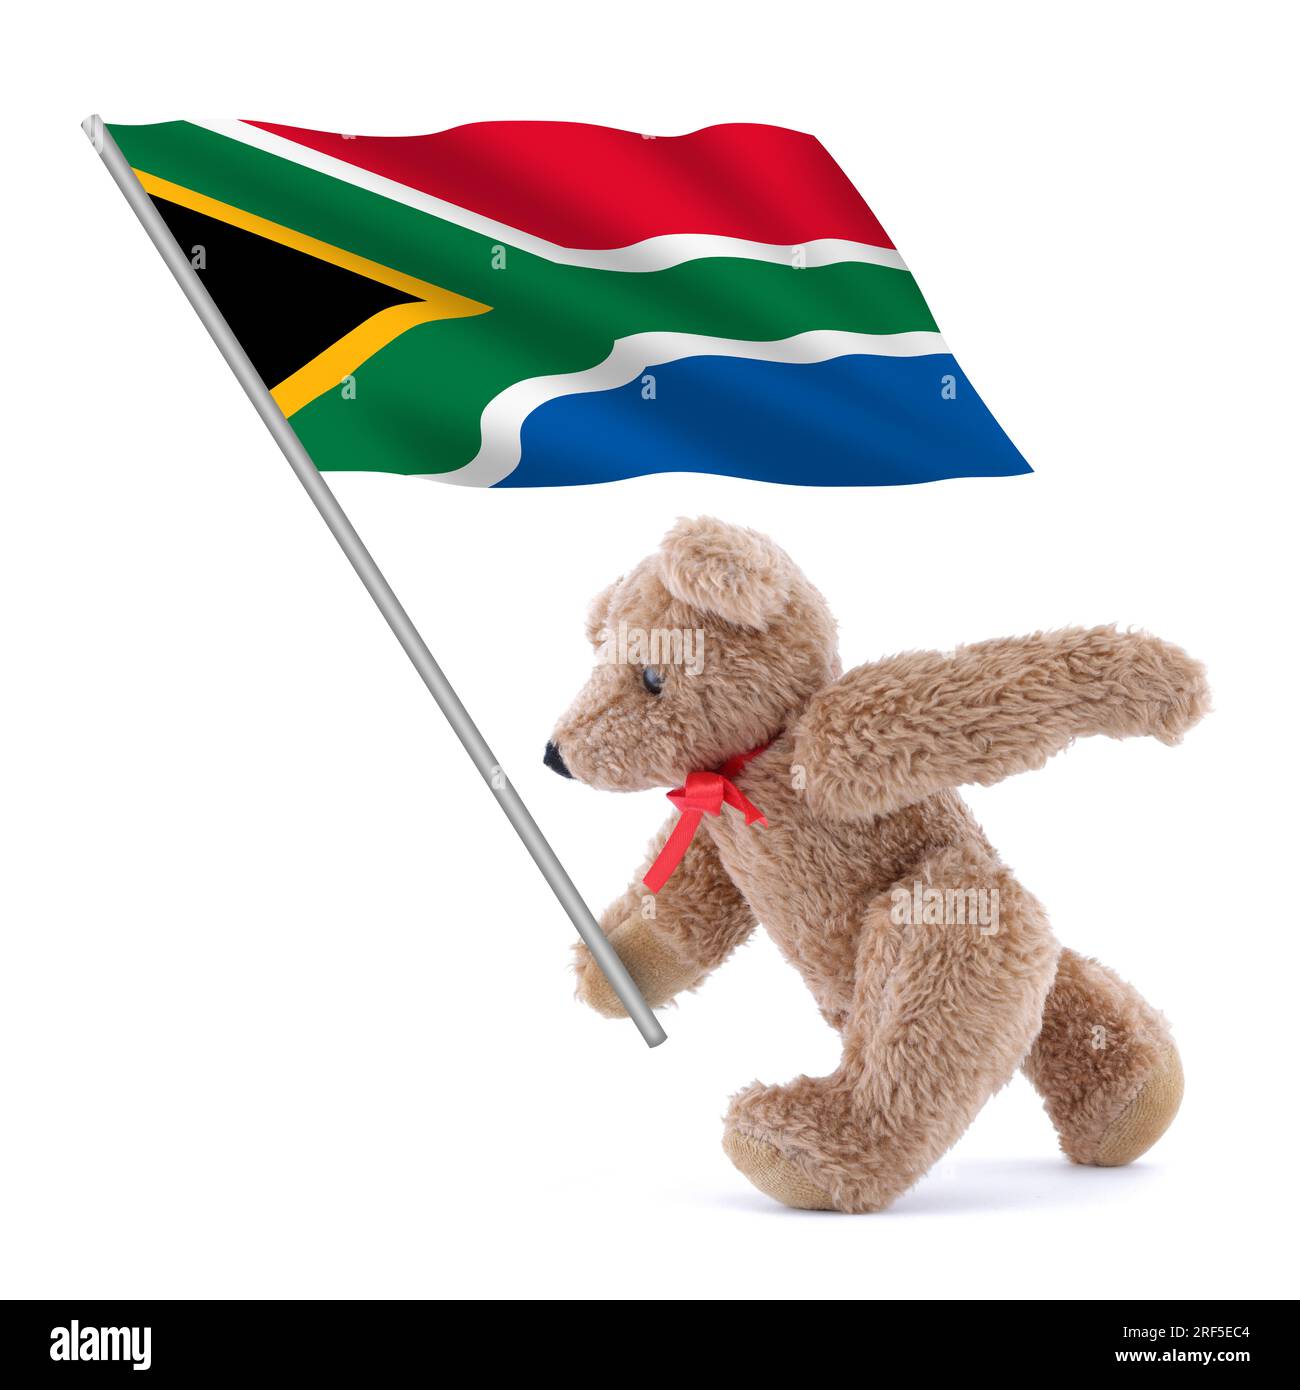 Eine Flagge der Republik Südafrika, die von einem süßen Teddybär getragen wird, weiß, grün, gelb, schwarz, blau Stockfoto